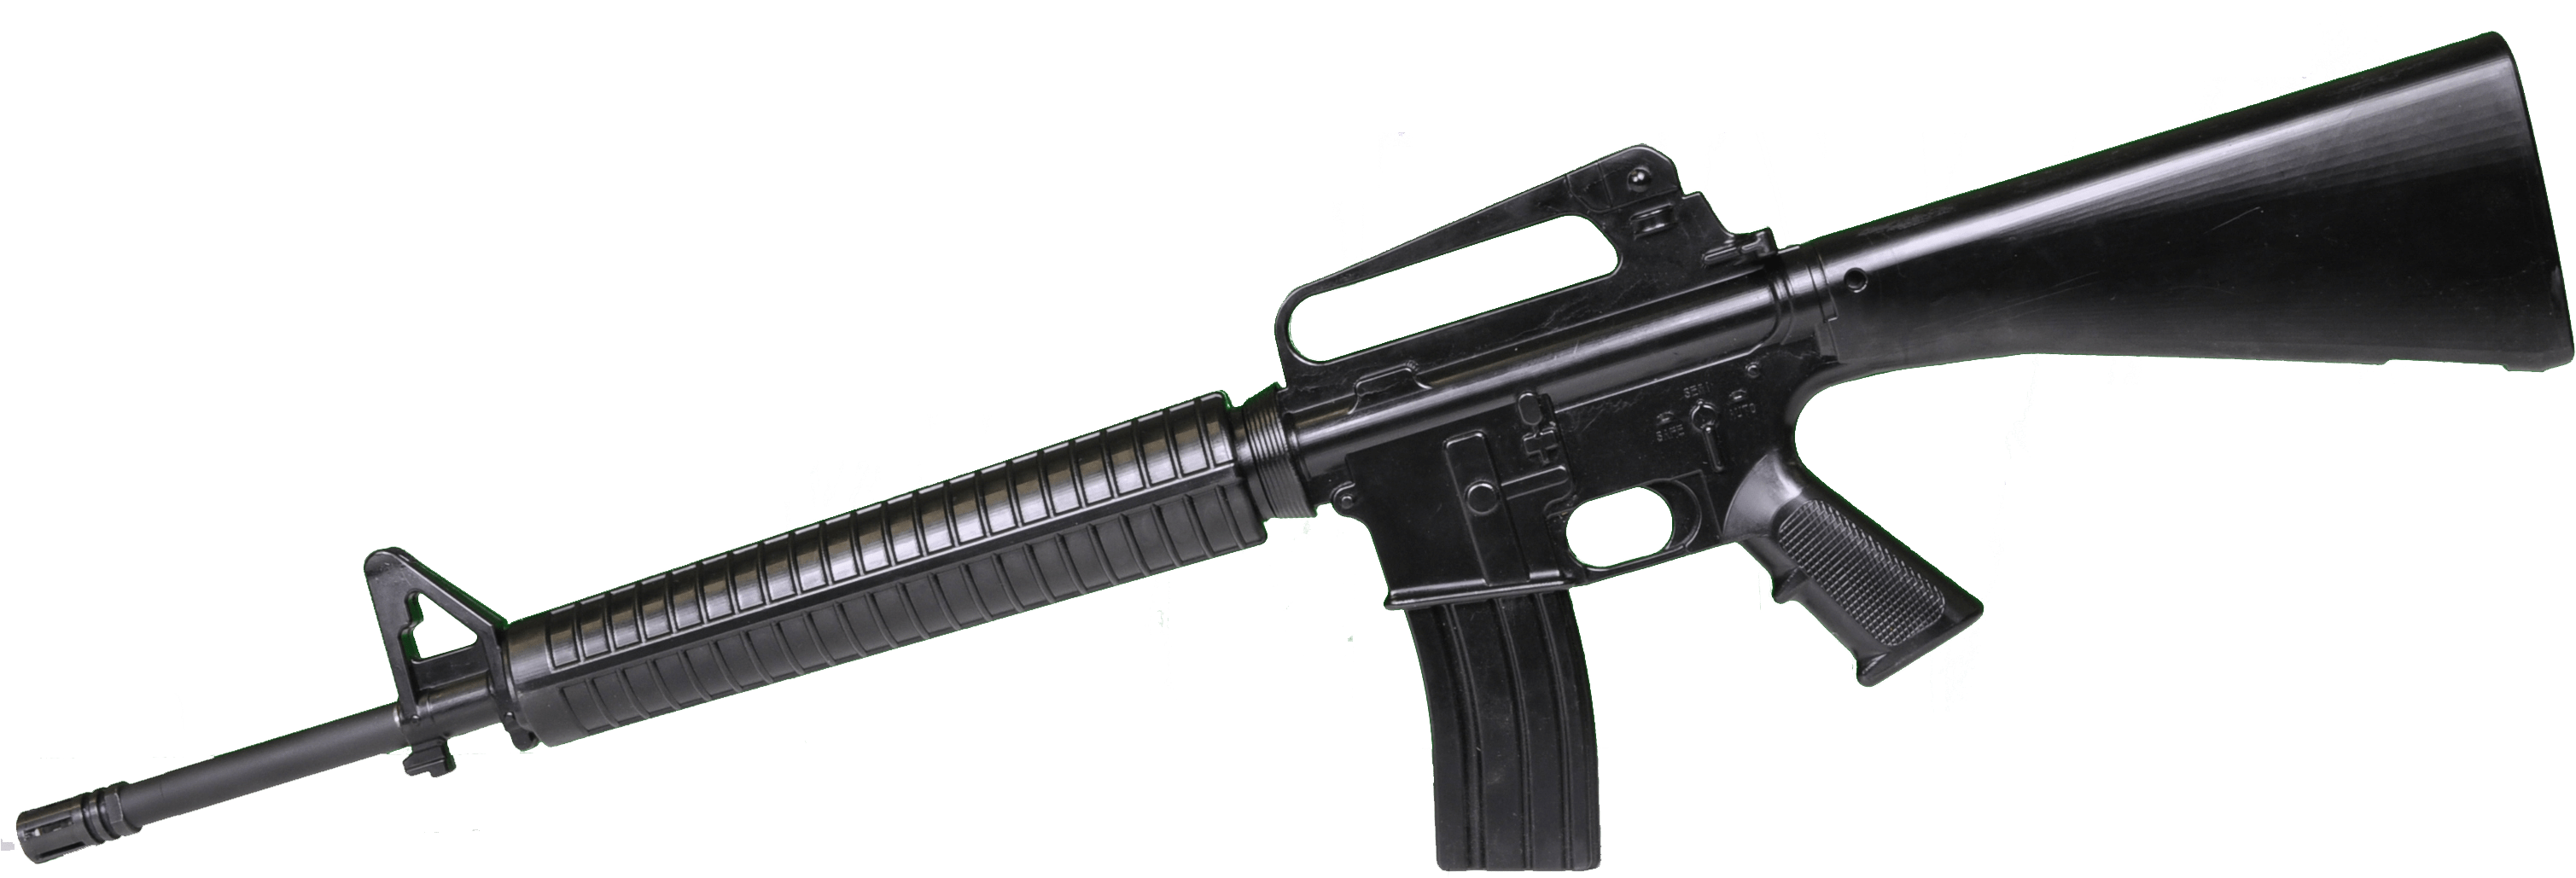 M16 Assault Rifle Jpeg (3060x1100)